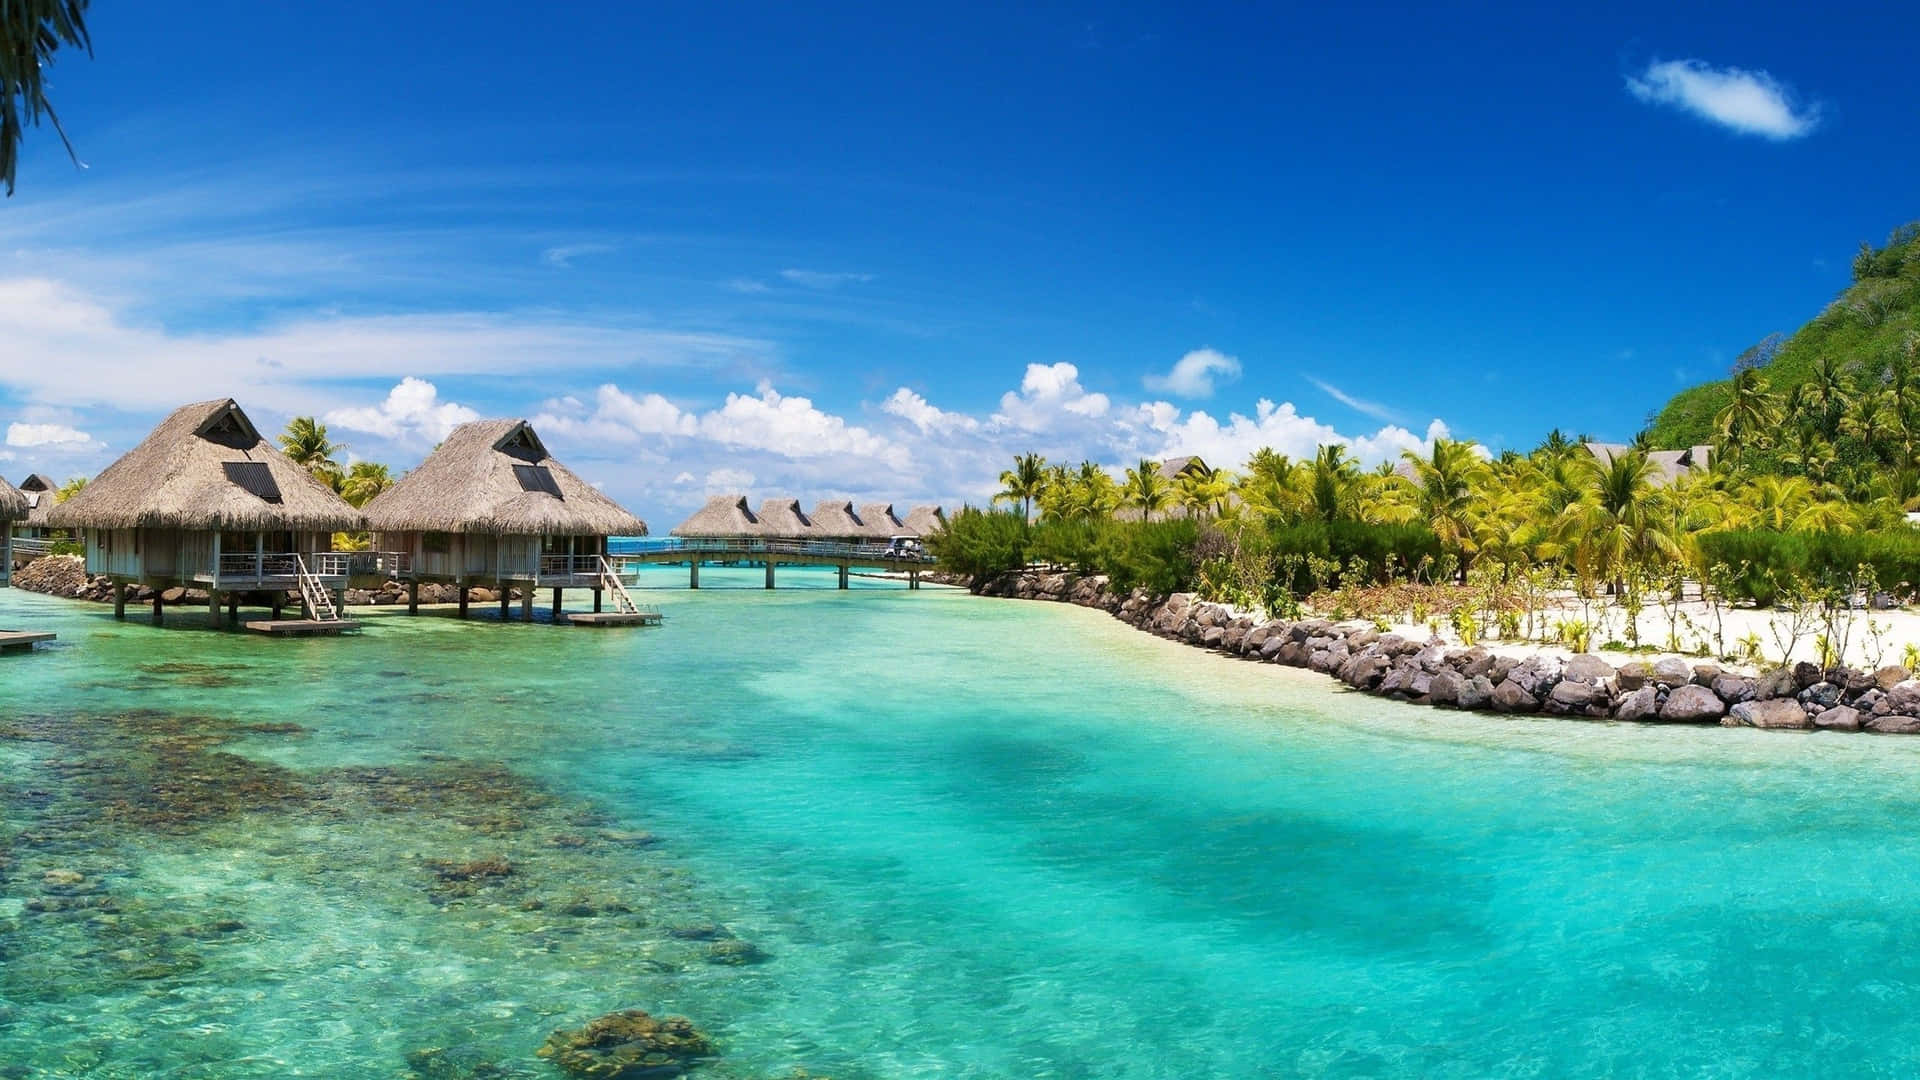 Nyd en solrig ferie på den smukke ø Bora Bora.